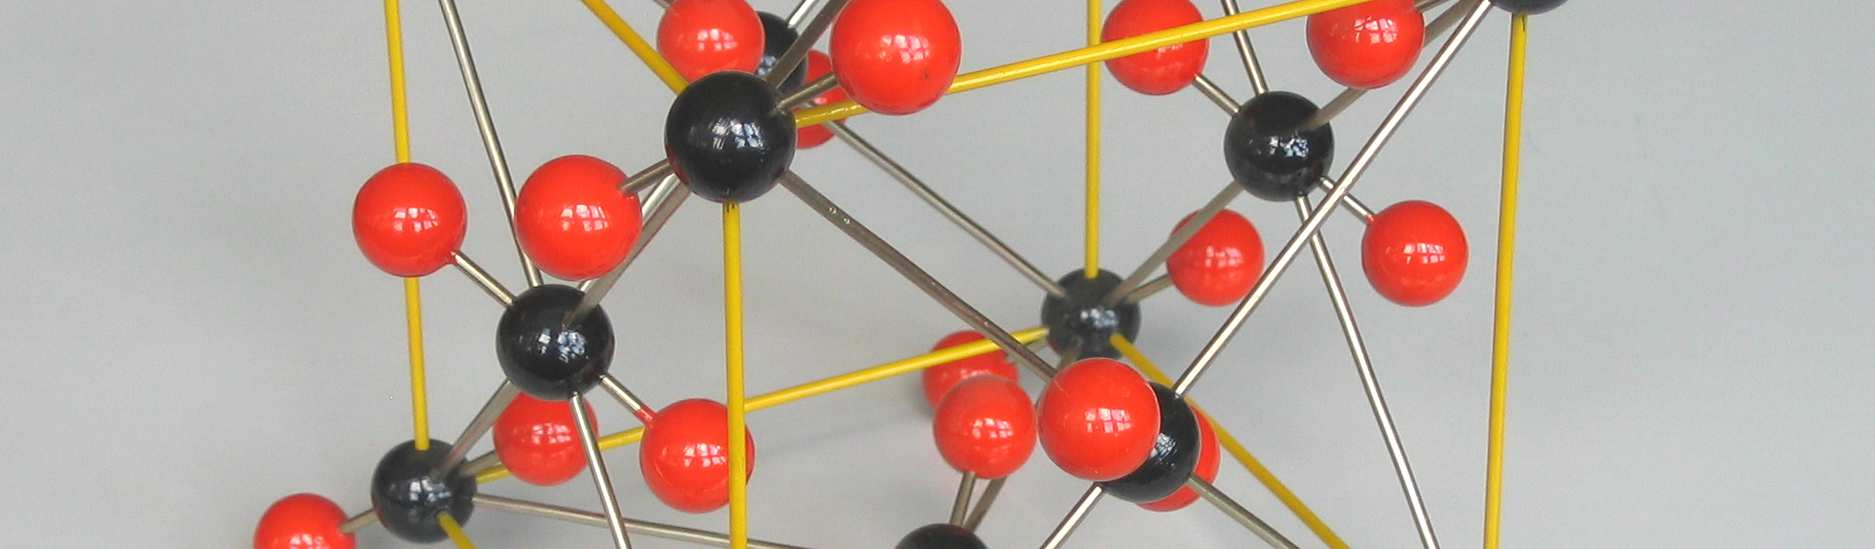 V modelech jsou atomy (nebo ionty) znázorněny jako kuličky rozlišené